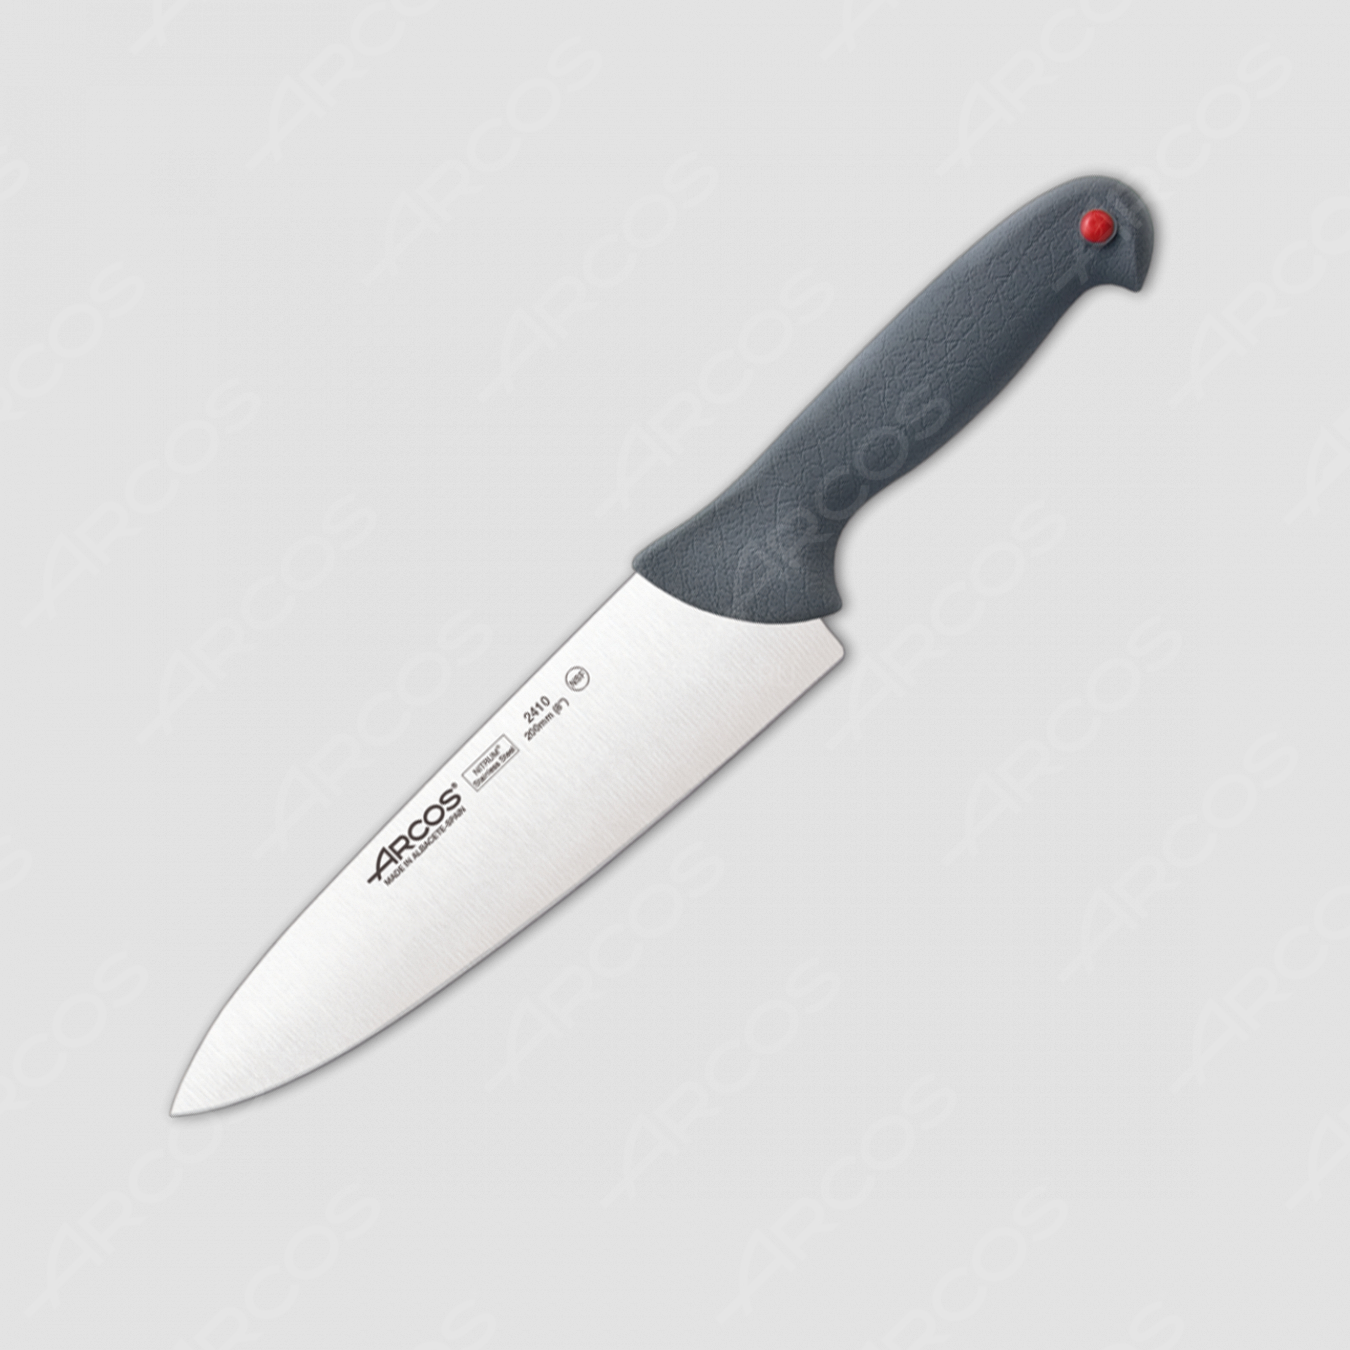 Профессиональный поварской кухонный нож 20 см, серия Colour-prof, ARCOS, Испания